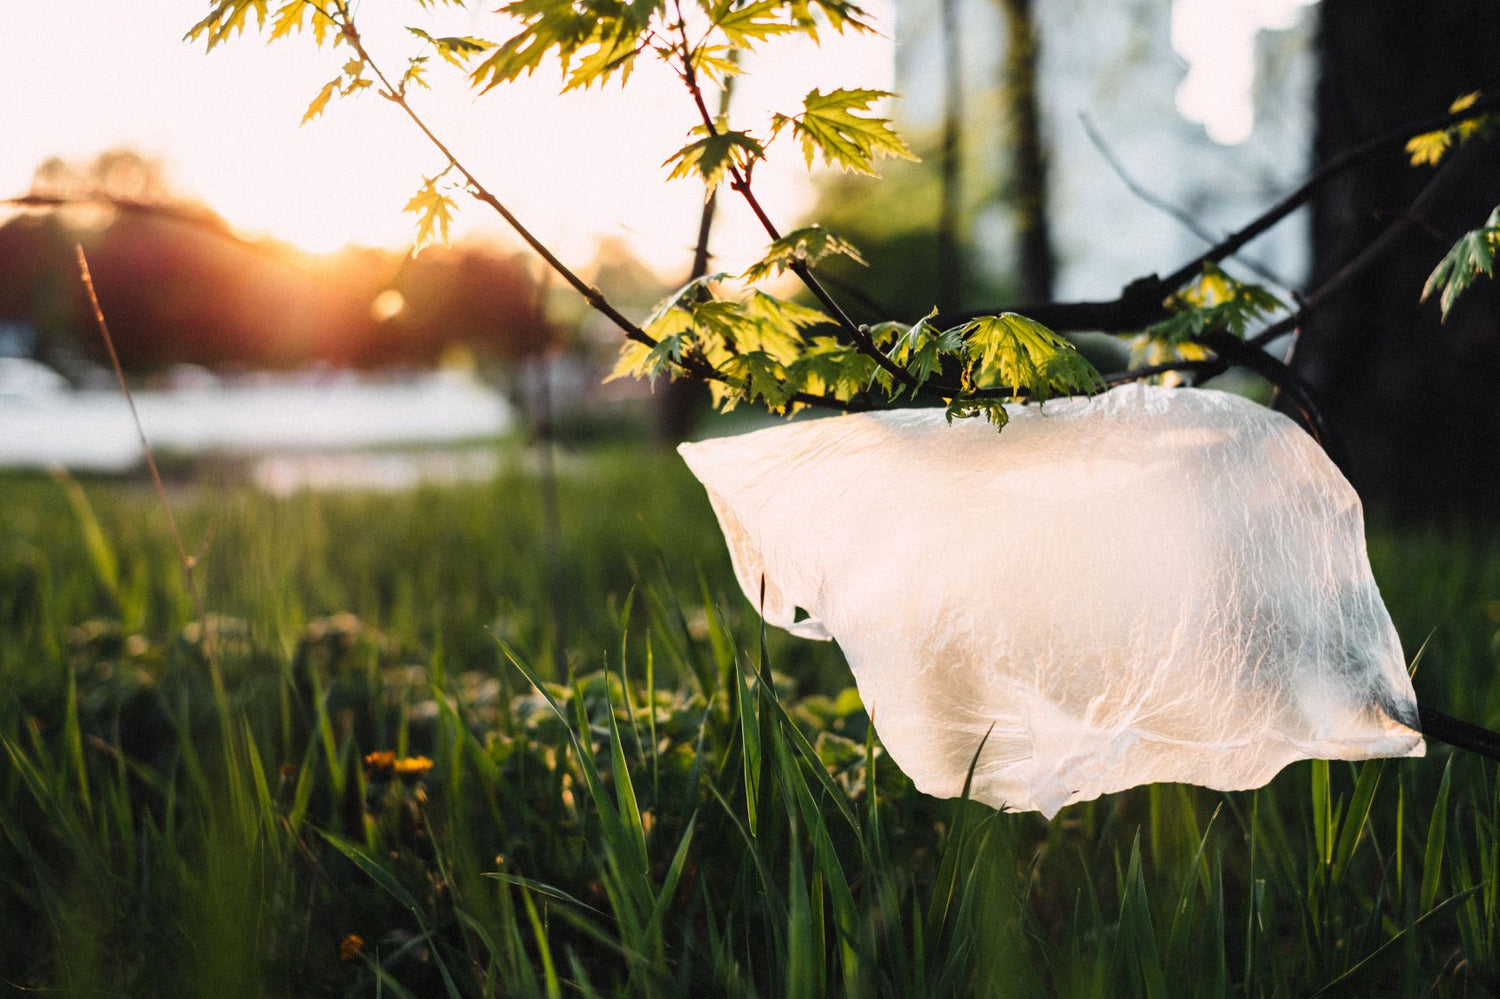 Plastic bag caught in grass